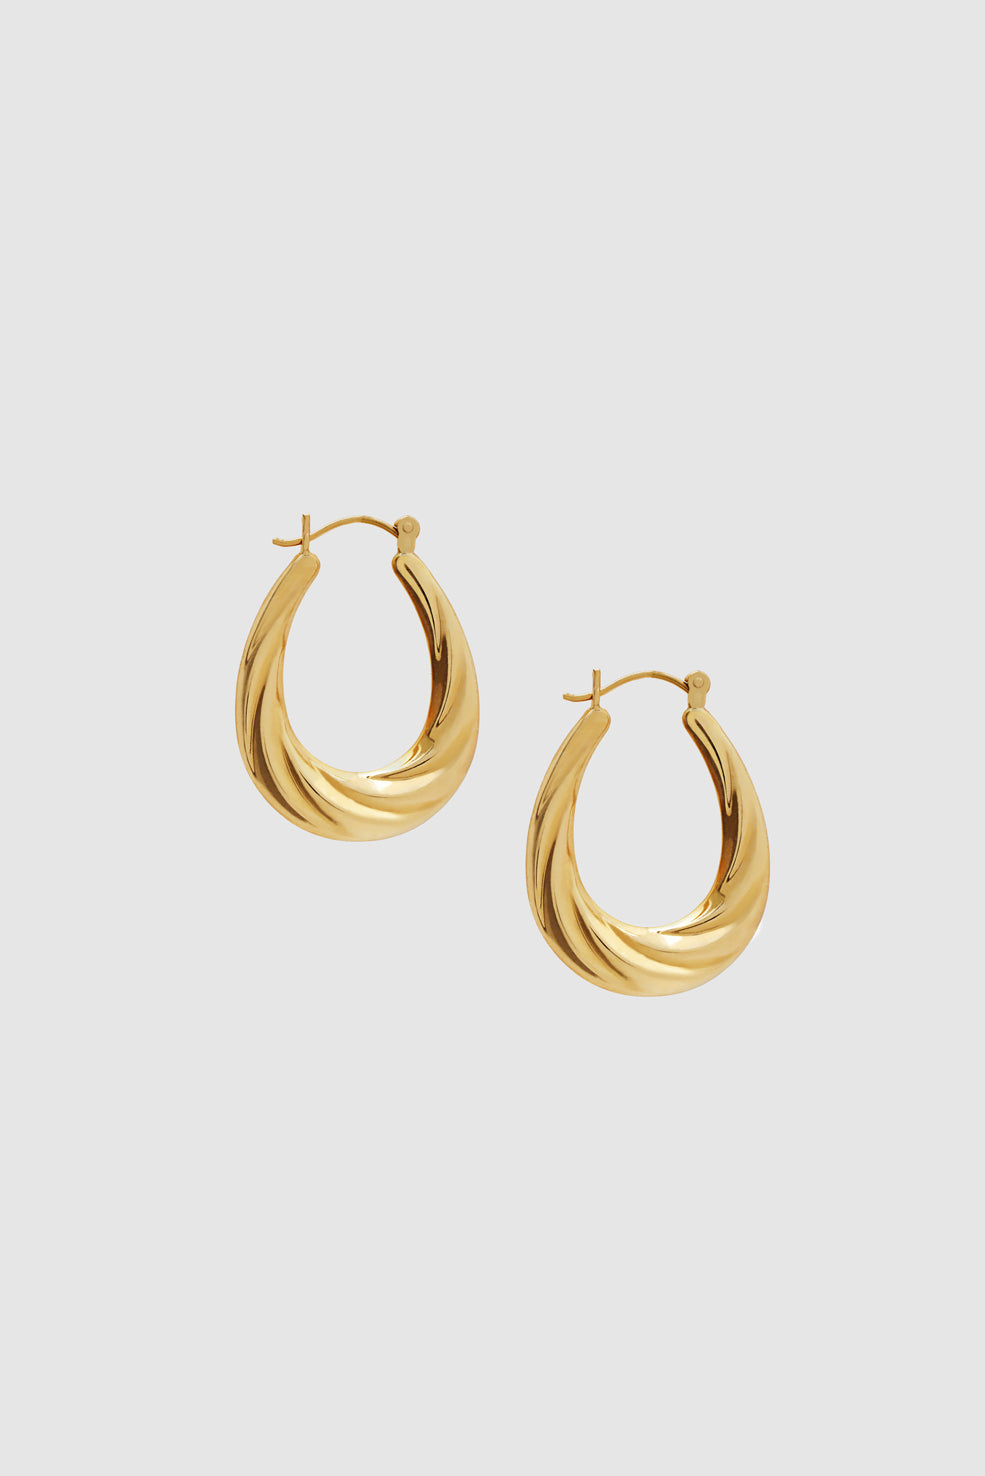 ANINE BING Oval Twist Hoop Earrings - 14k Gold - Second Front View